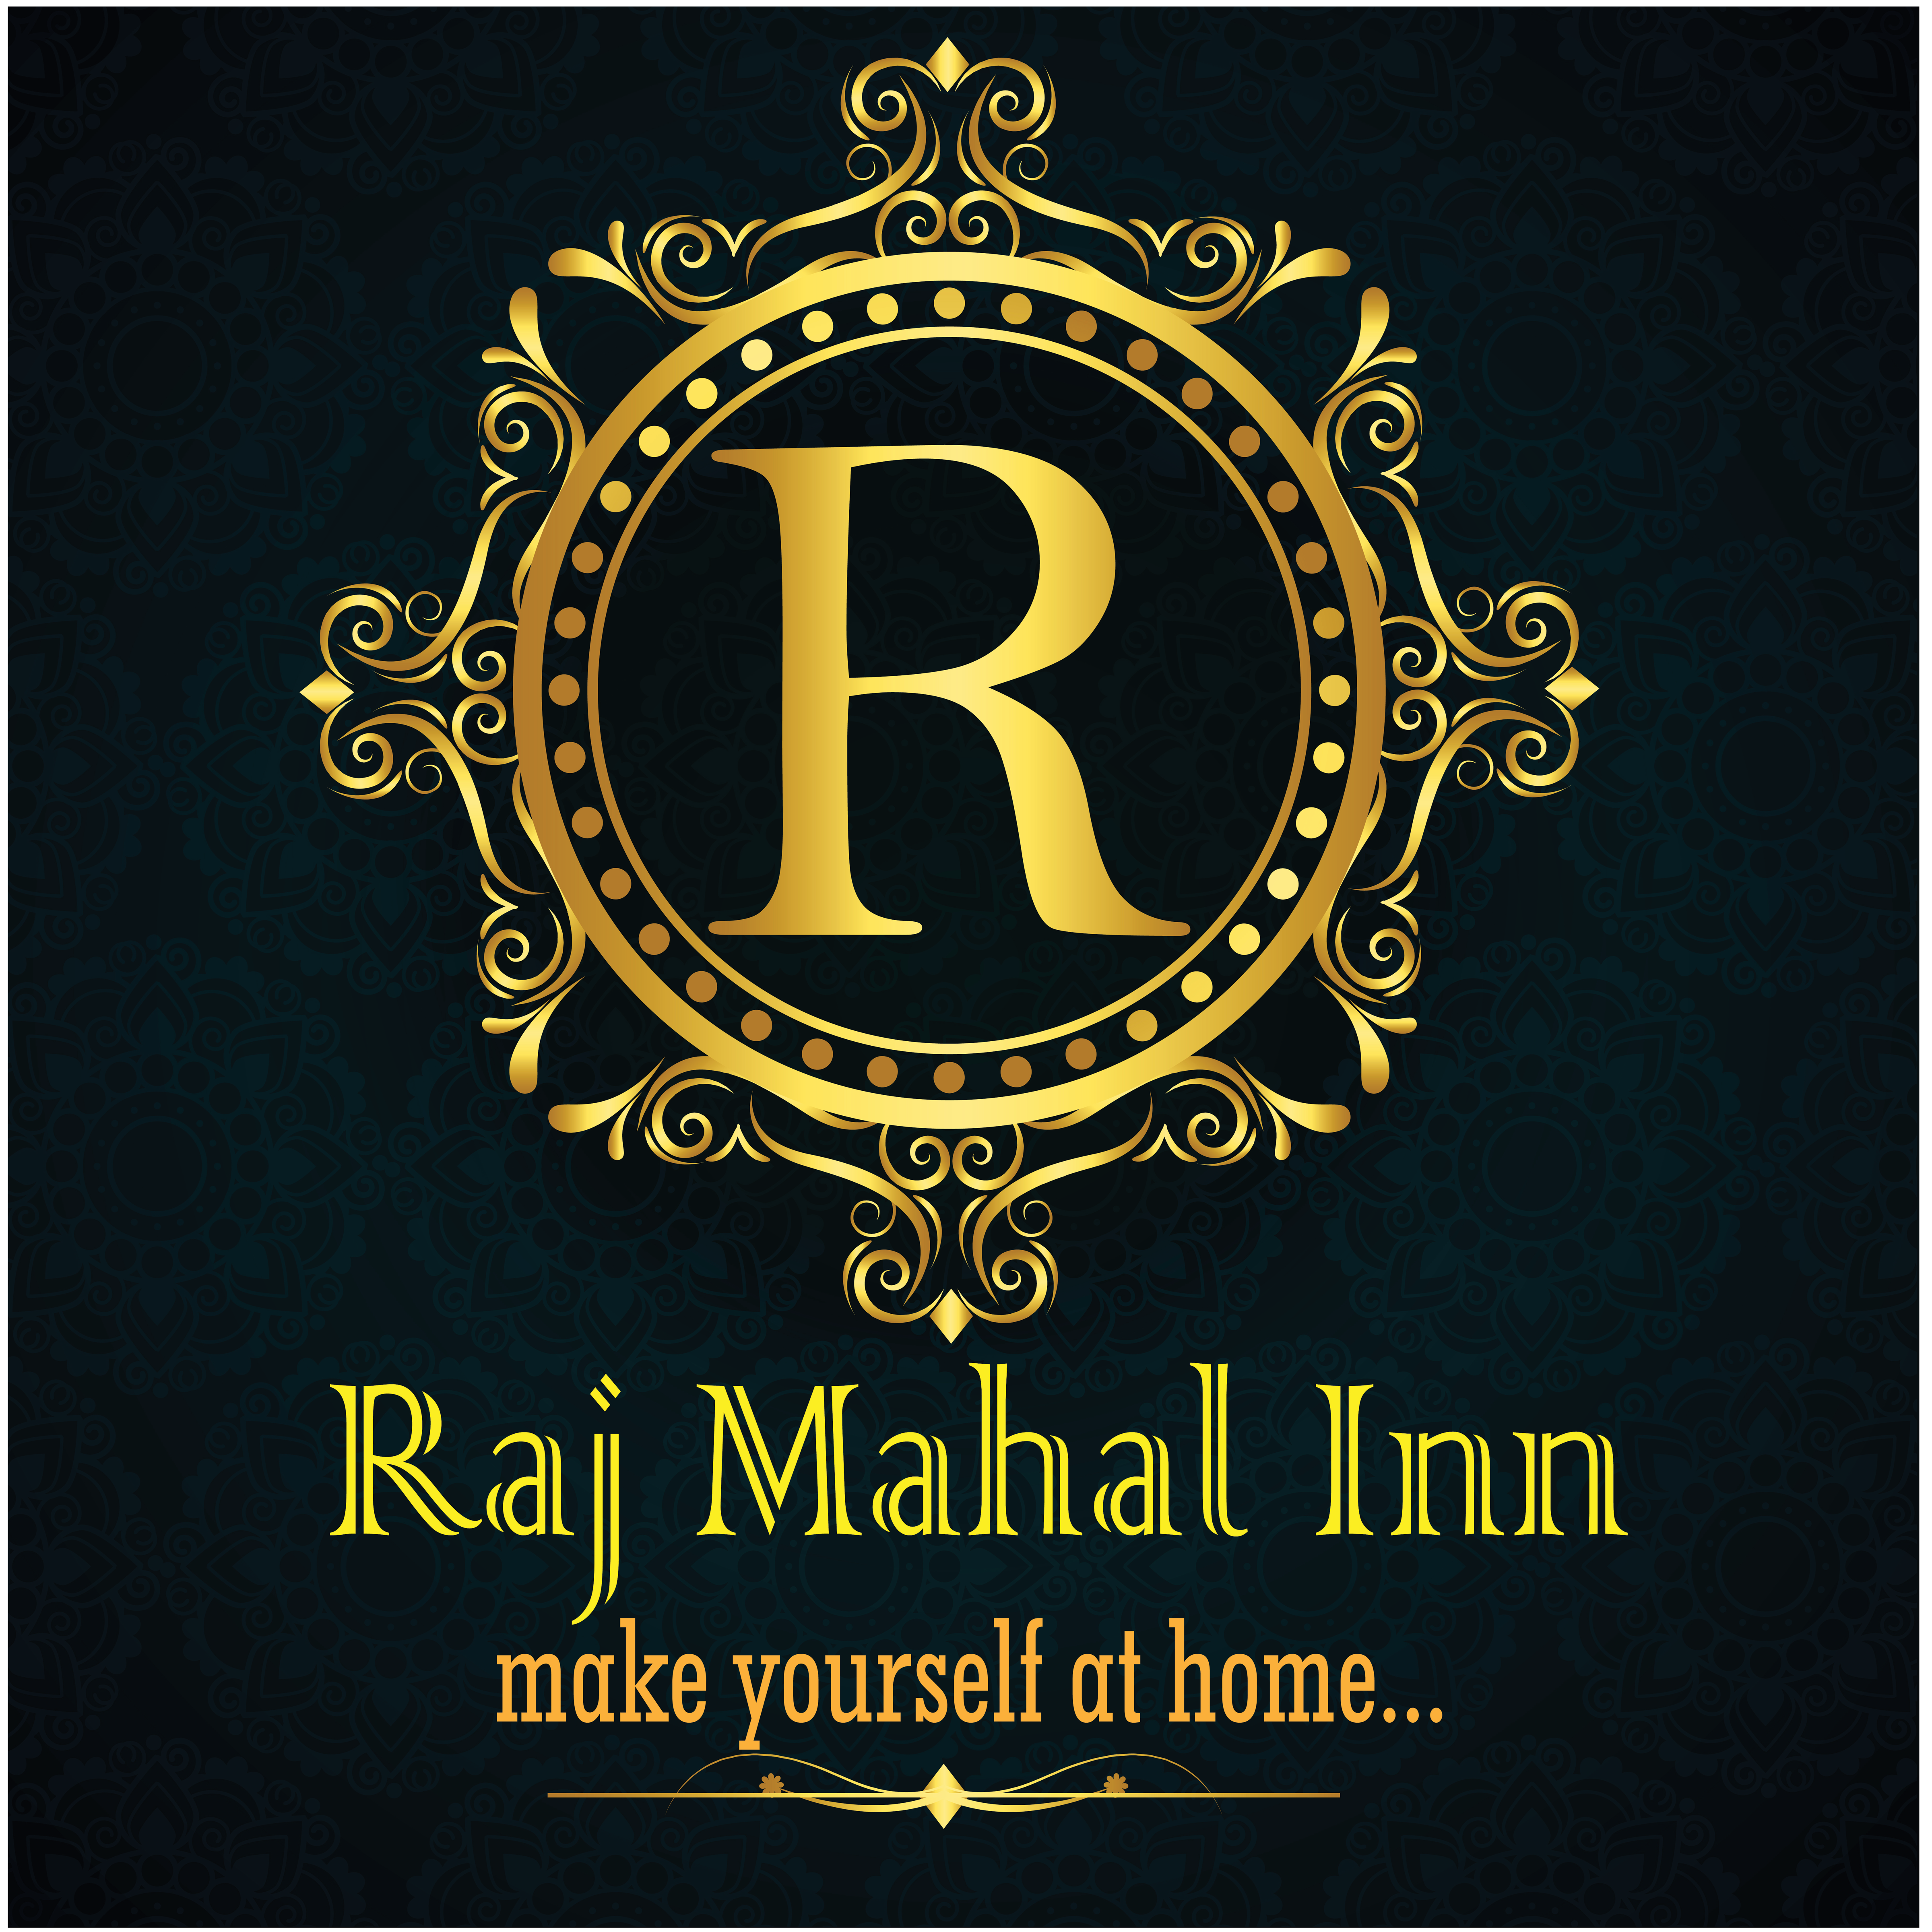 Raj Mahal Inn Logo